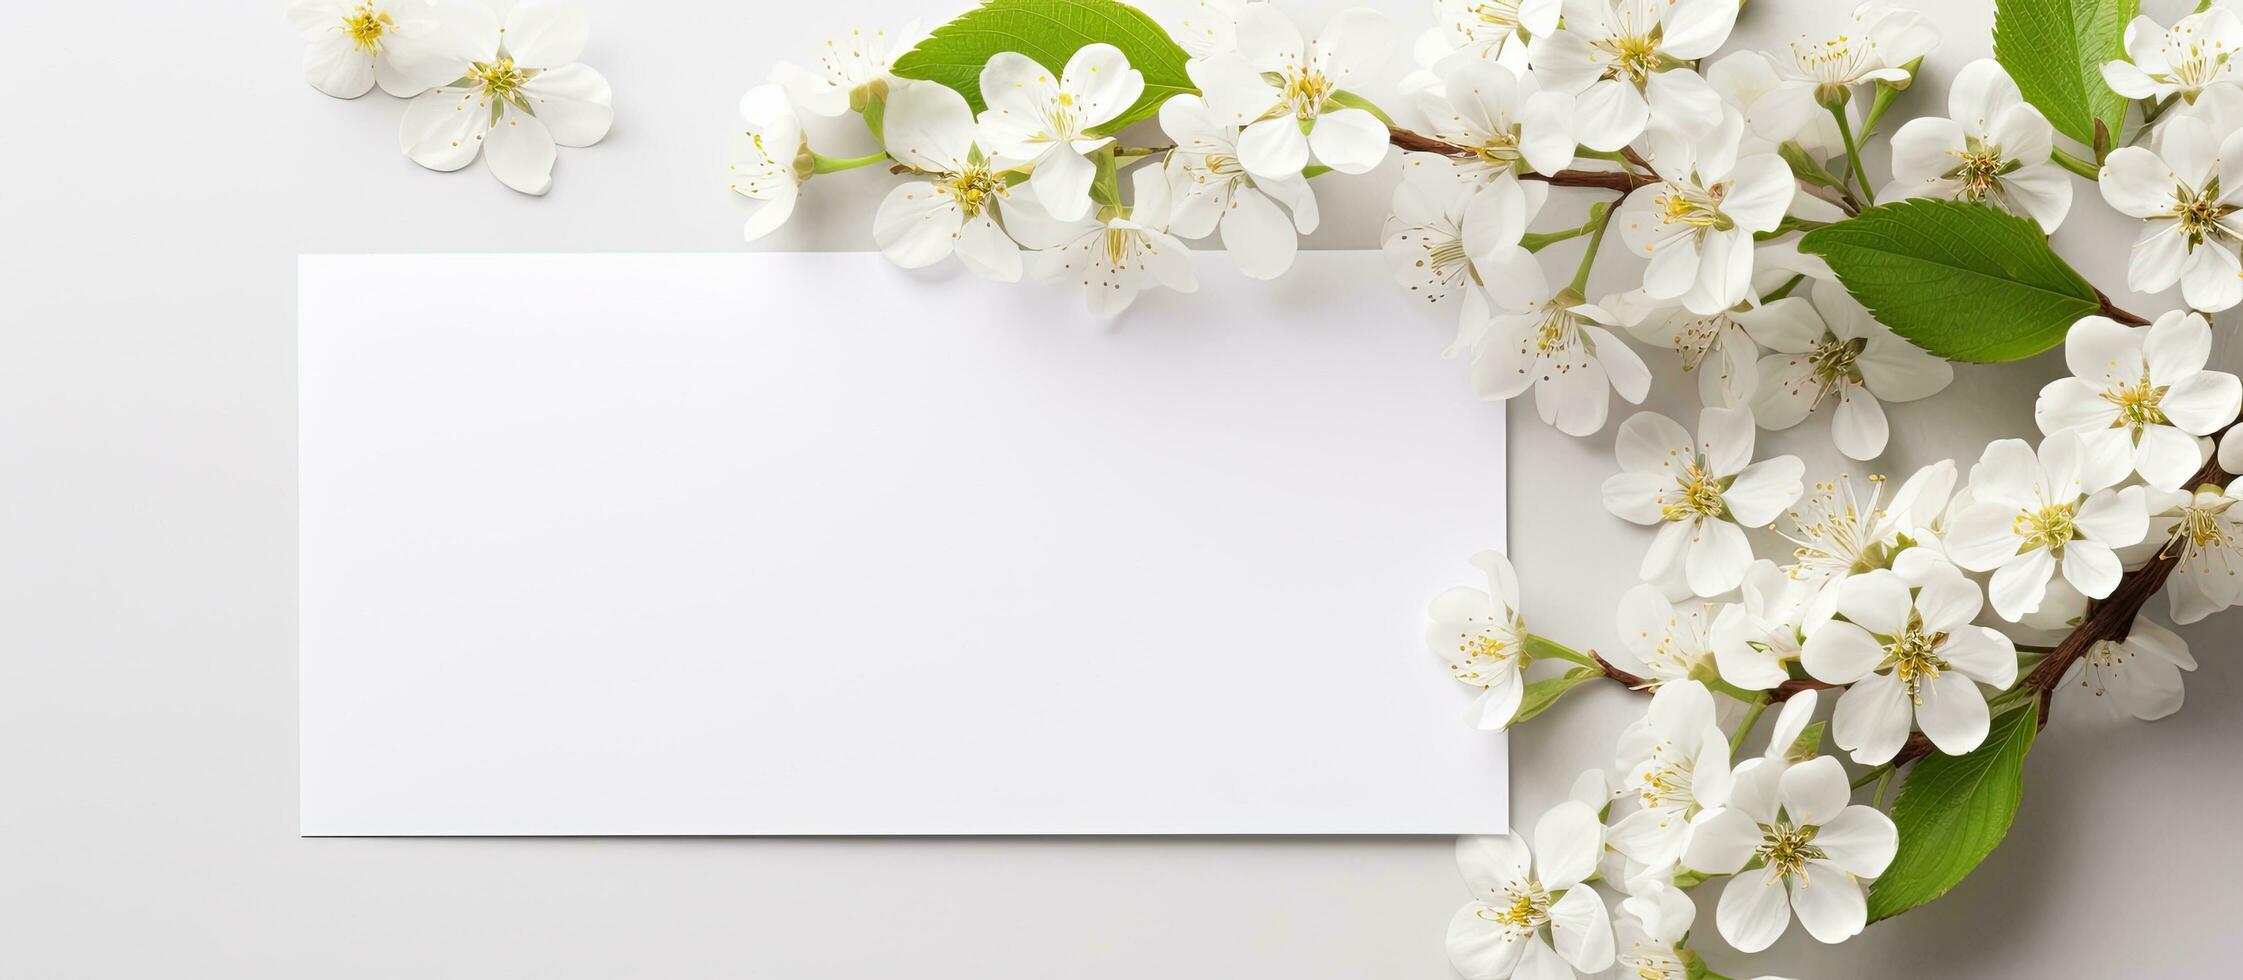 topo Visão brincar do uma em branco papel cumprimento cartão com a envelope e branco flores, ao longo com foto